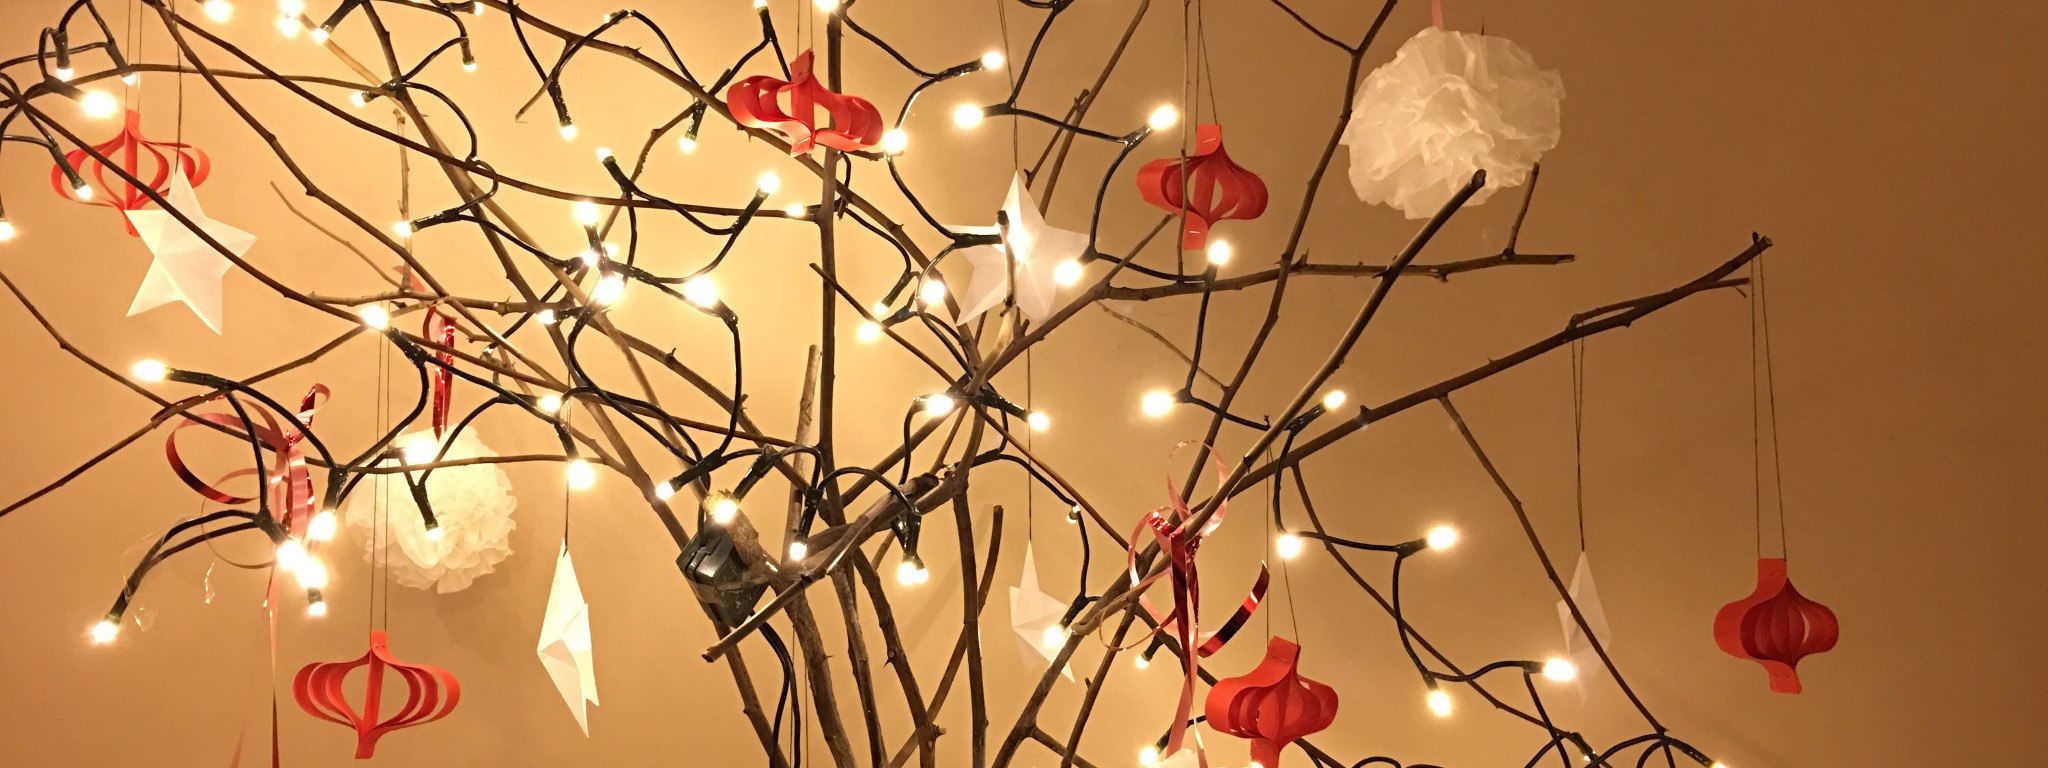 Świąteczne drzewko przystrojone lampkami i ozdobami z papieru